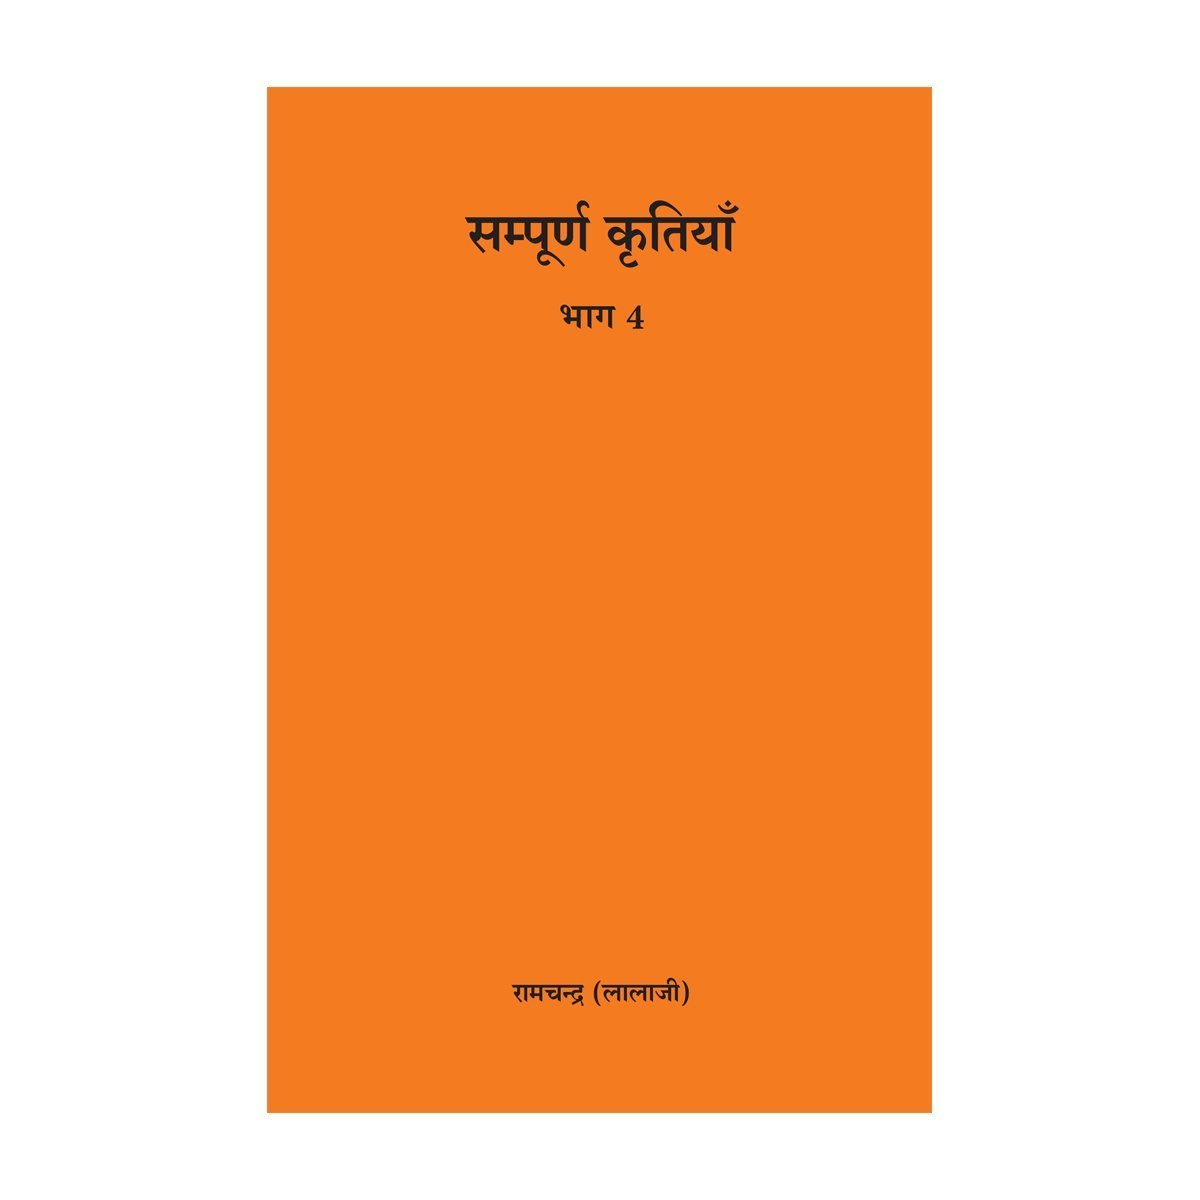 Complete Works of Lalaji Volume 4- Marathi